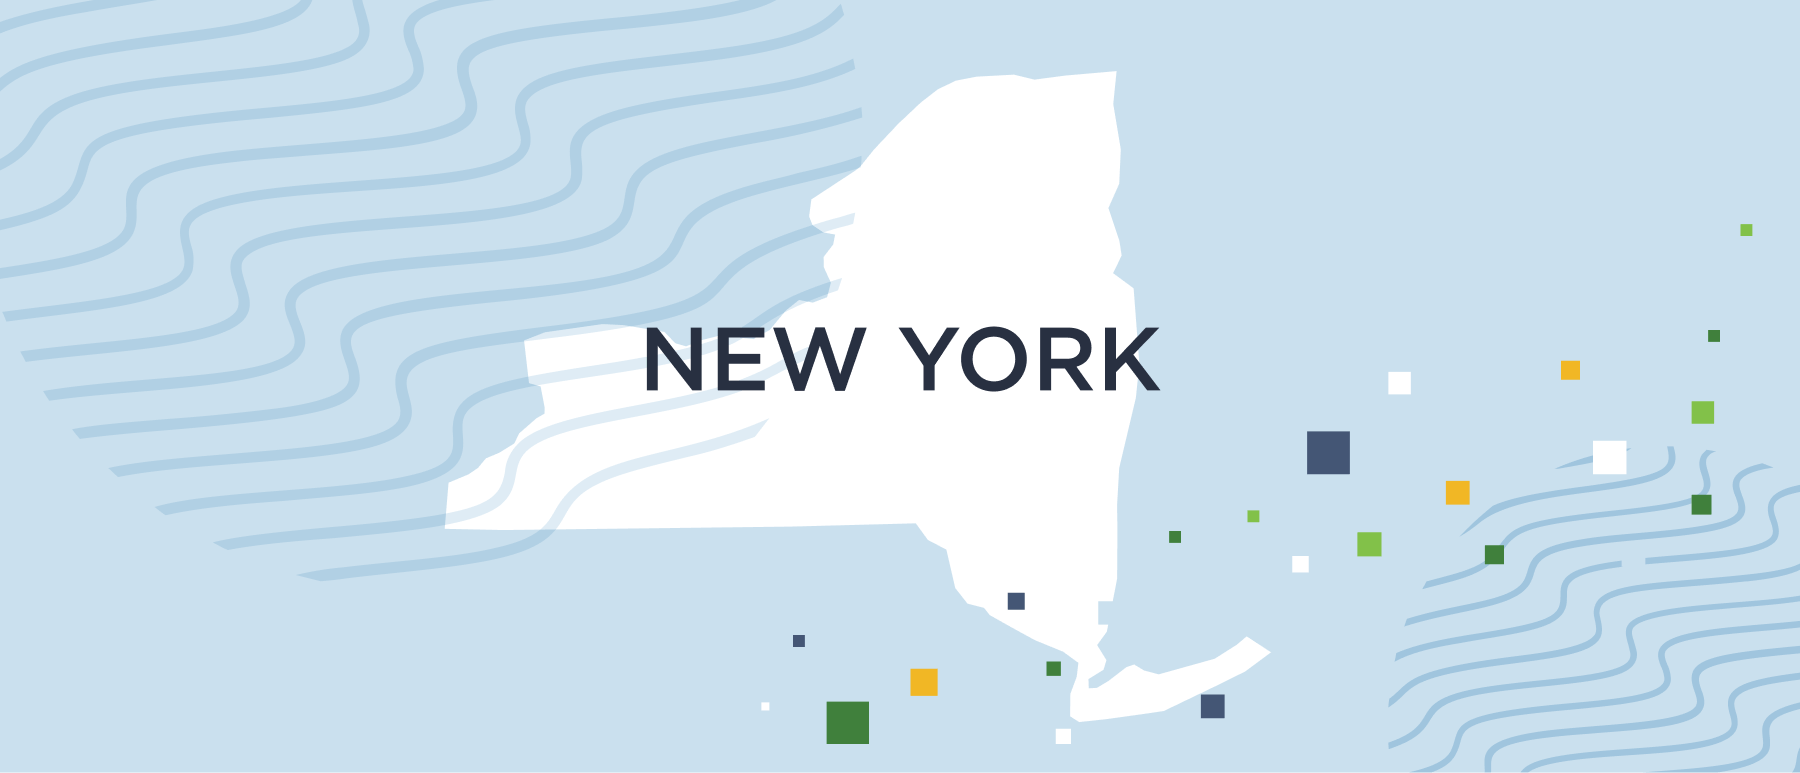 Kiểm tra nền tảng New York của GoodHire là một trong những công việc quan trọng nhất khi tìm kiếm nhân viên mới. Hãy xem hình ảnh liên quan để tìm hiểu về các dịch vụ và tính năng đặc biệt mà họ cung cấp để đảm bảo cho các nhà tuyển dụng và ứng viên sự an tâm và tin tưởng.